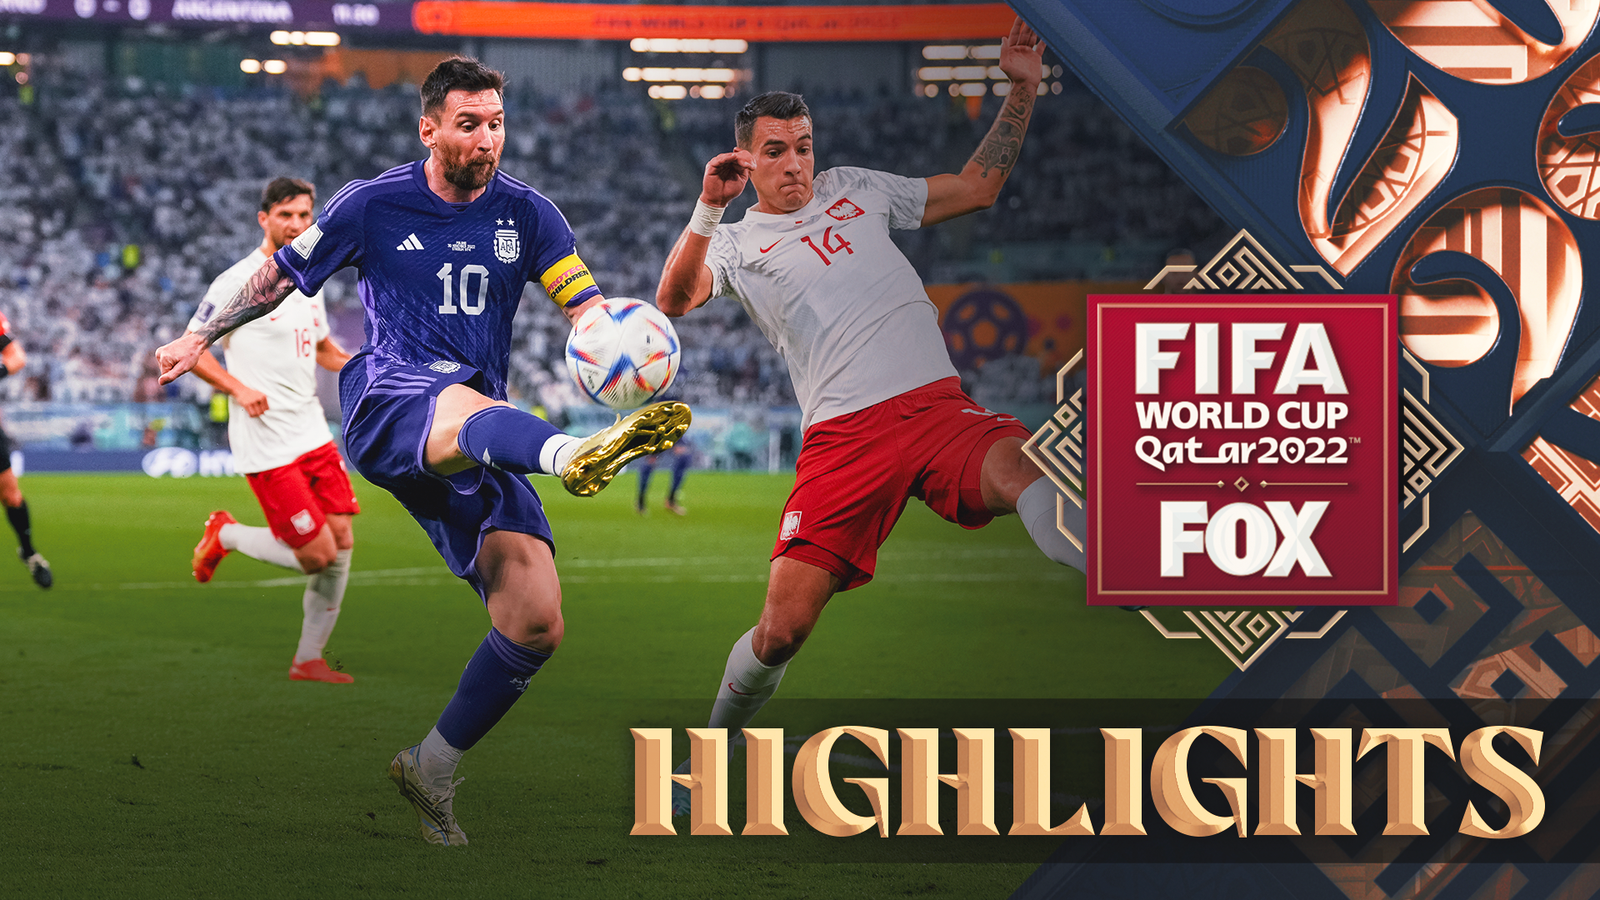 Poland vs. Argentina highlights